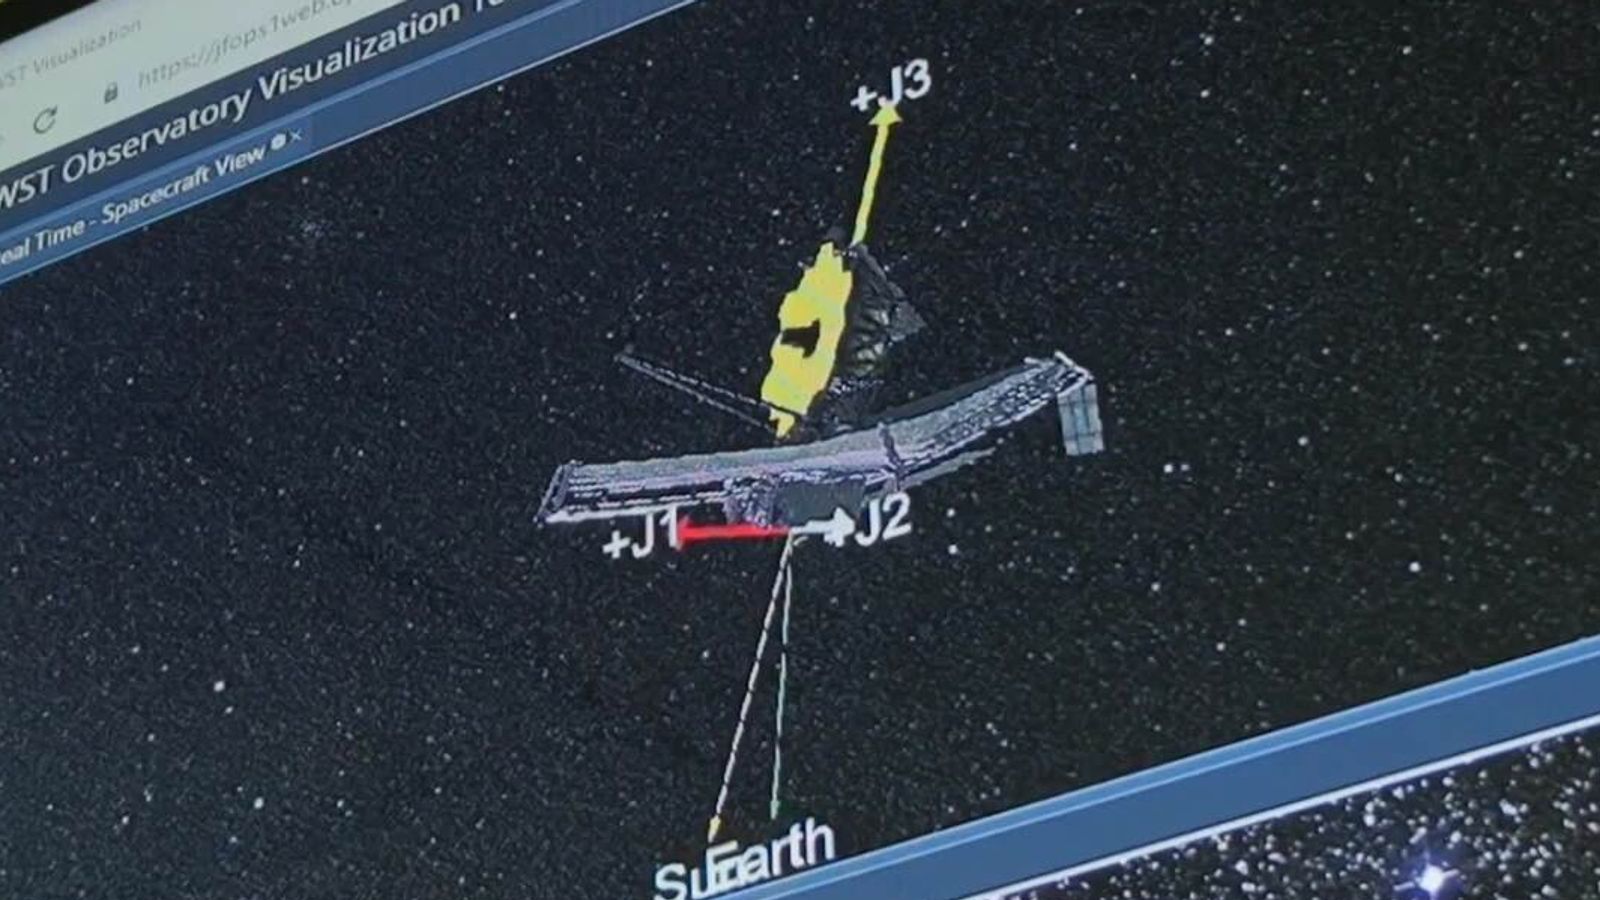 Impacto de meteoro causou danos “significativos e irreparáveis” ao Telescópio Espacial James Webb |  notícias de ciência e tecnologia